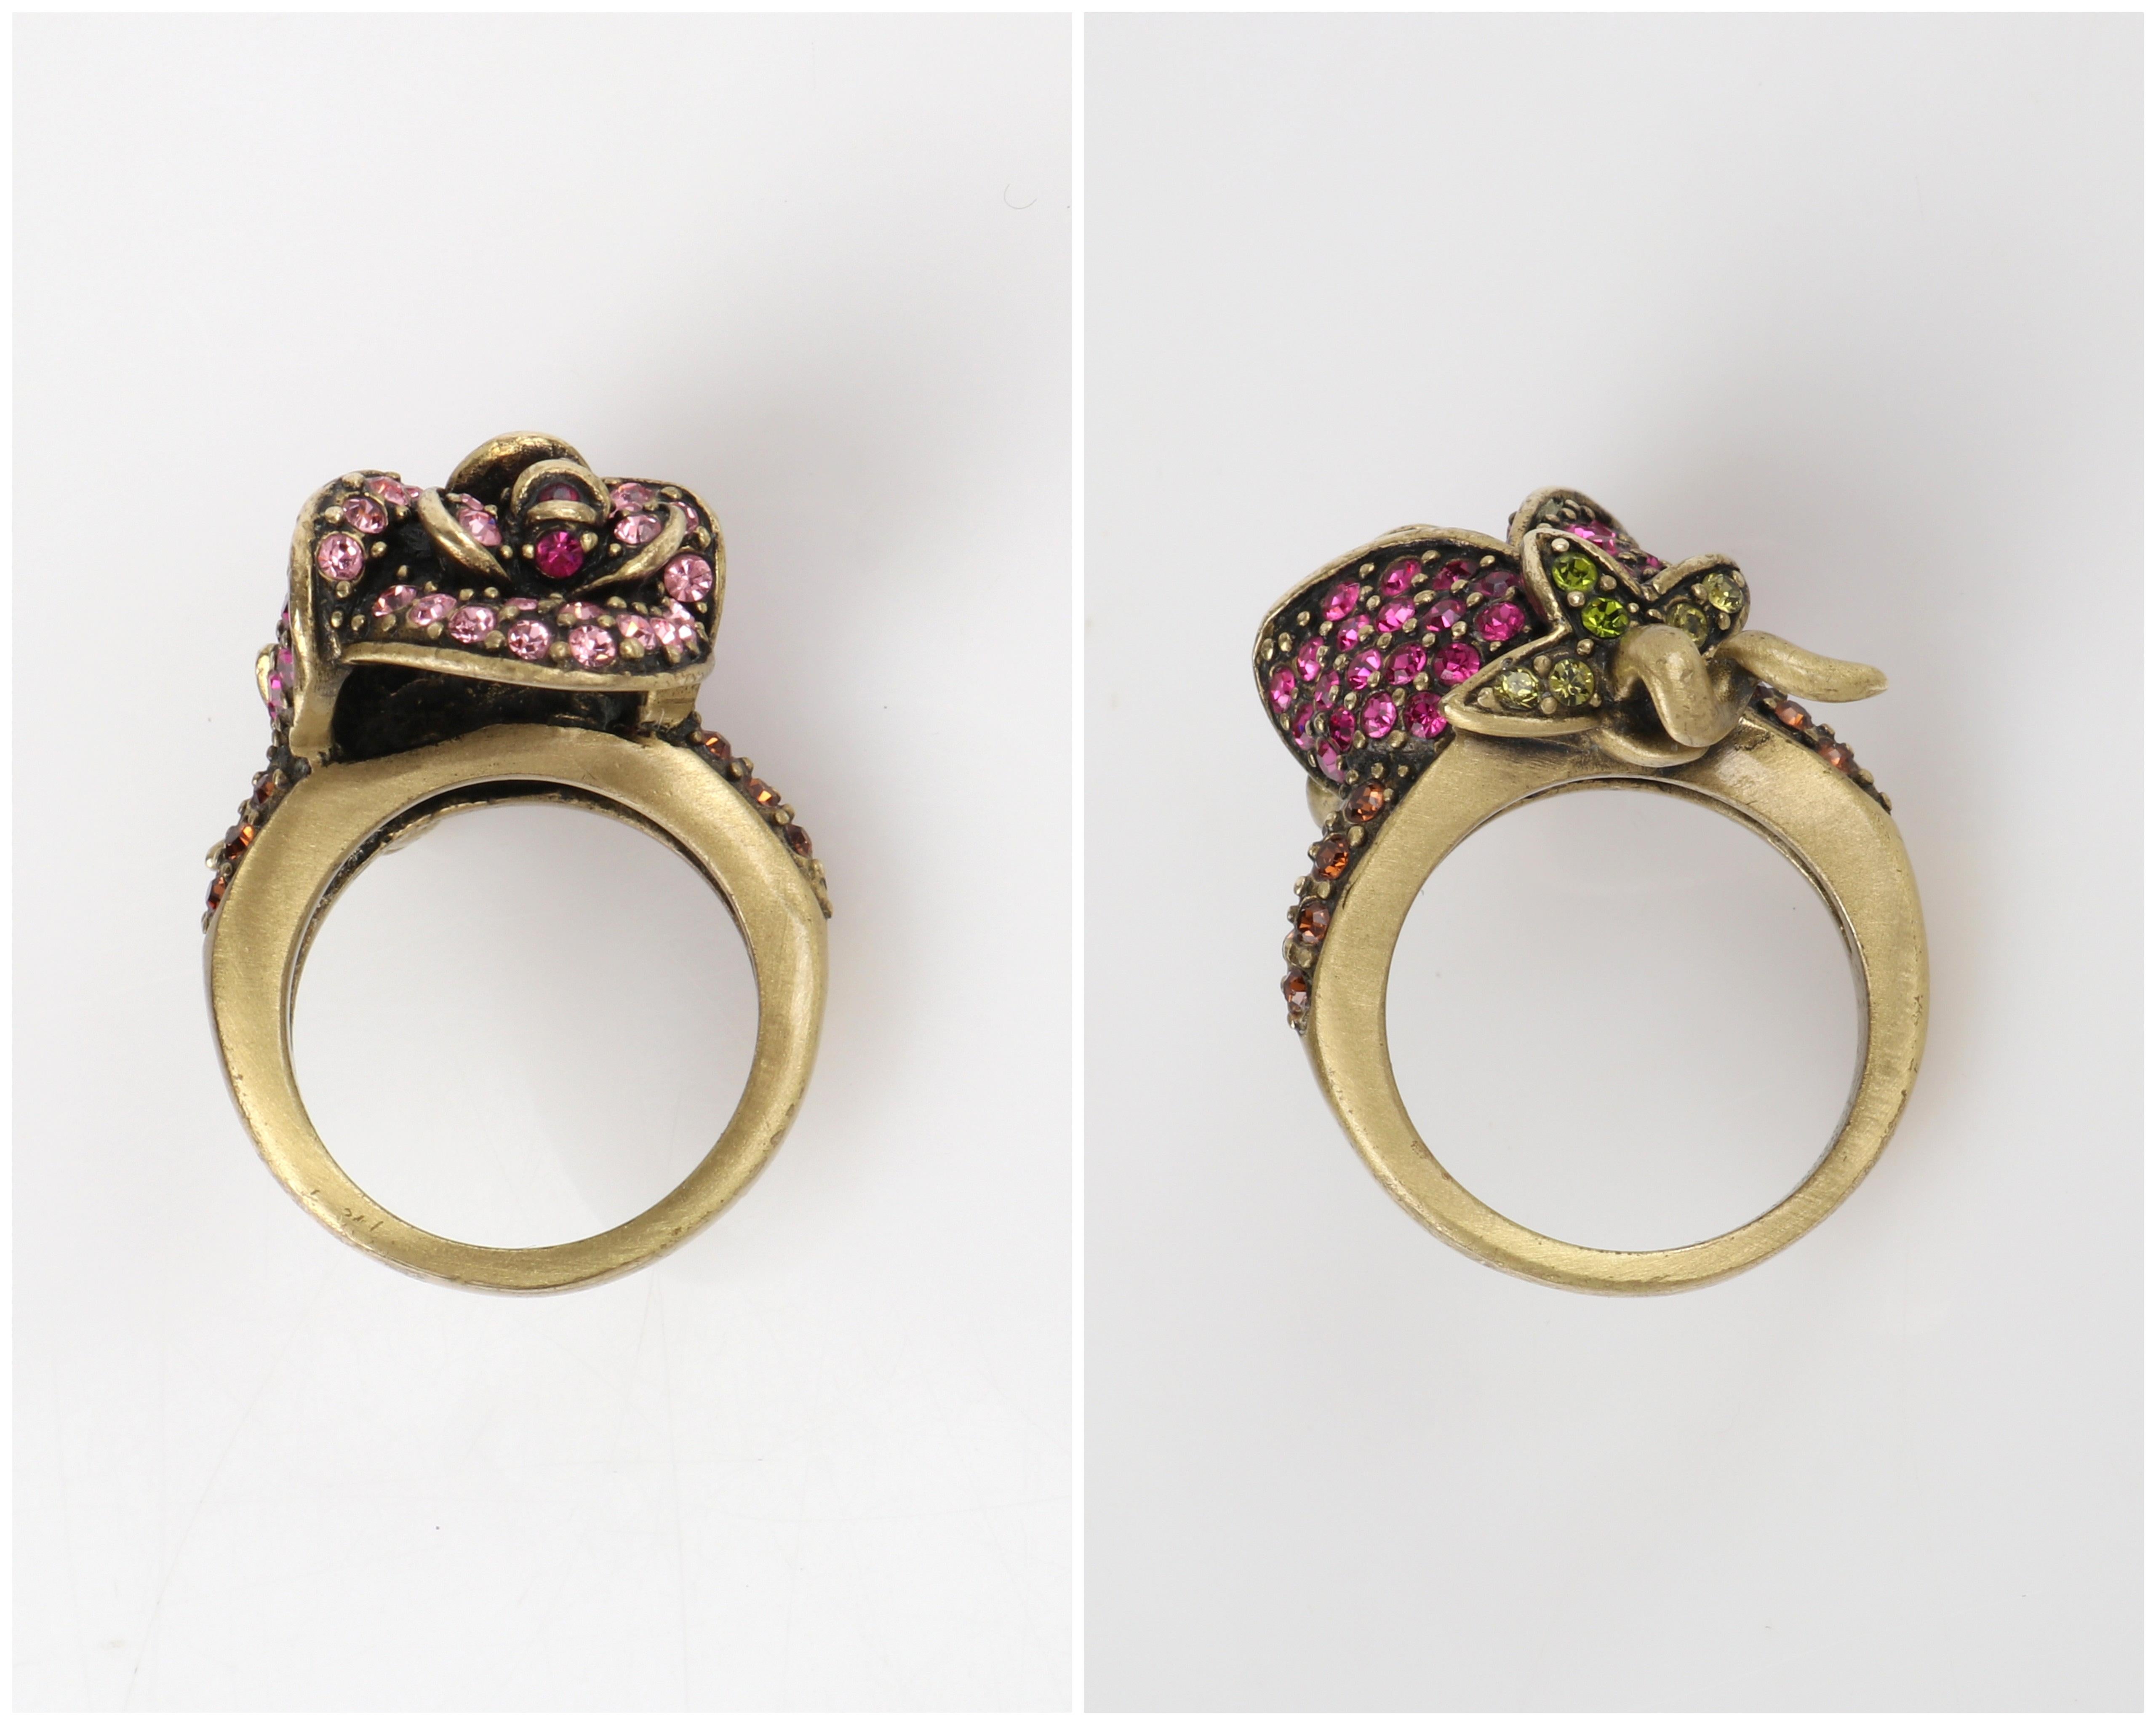 HEIDI DAUS c.2014 “Climbing Roses” Pink Green Swarovski Crystal Floral Rose Ring For Sale 2